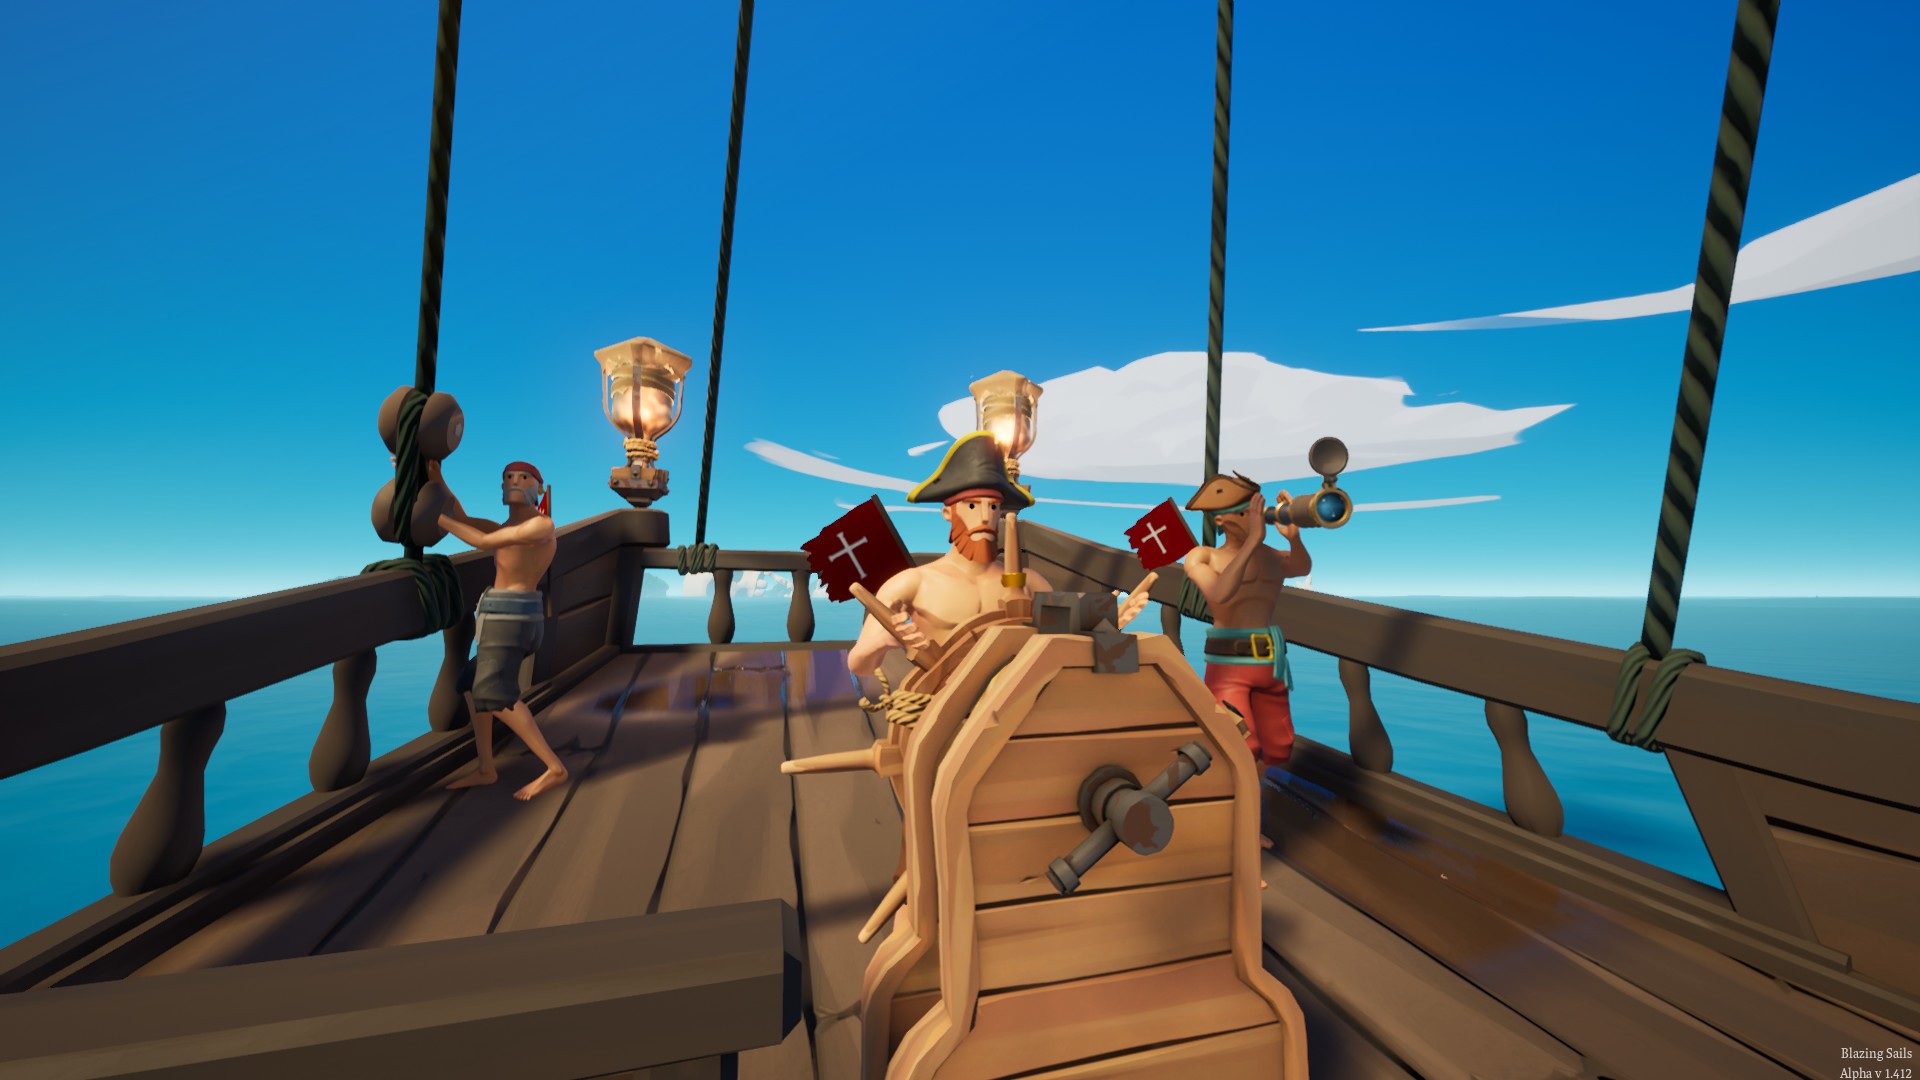 Пиратка стим версия. Блейзинг Саилс. Пират батл рояль. Игра про пиратов Sea of Thieves. Blazing Sails: Pirate Battle.